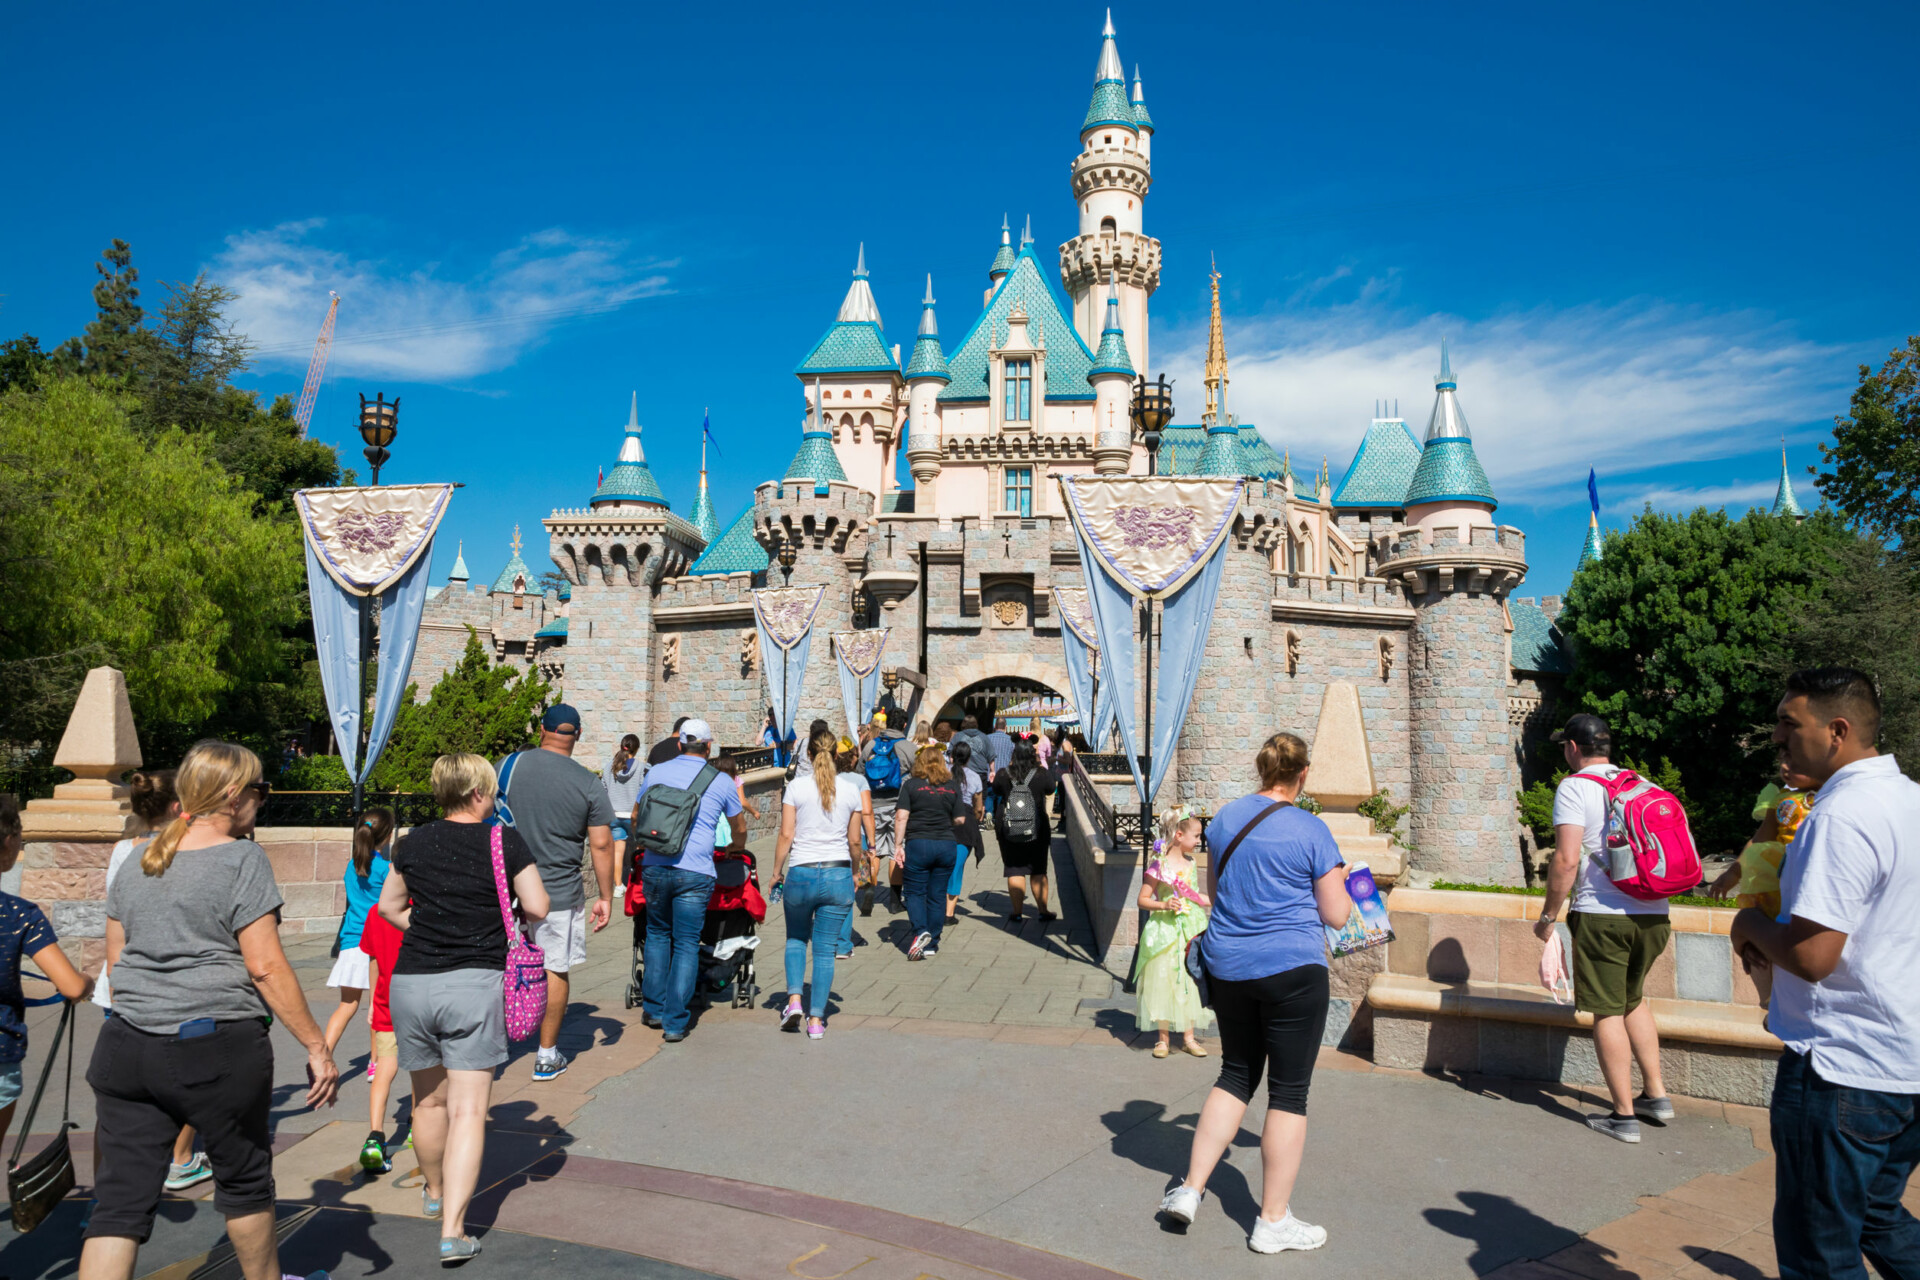 Τέλη Απριλίου θα επαναλειτουργήσει η Disneyland στην Καλιφόρνια